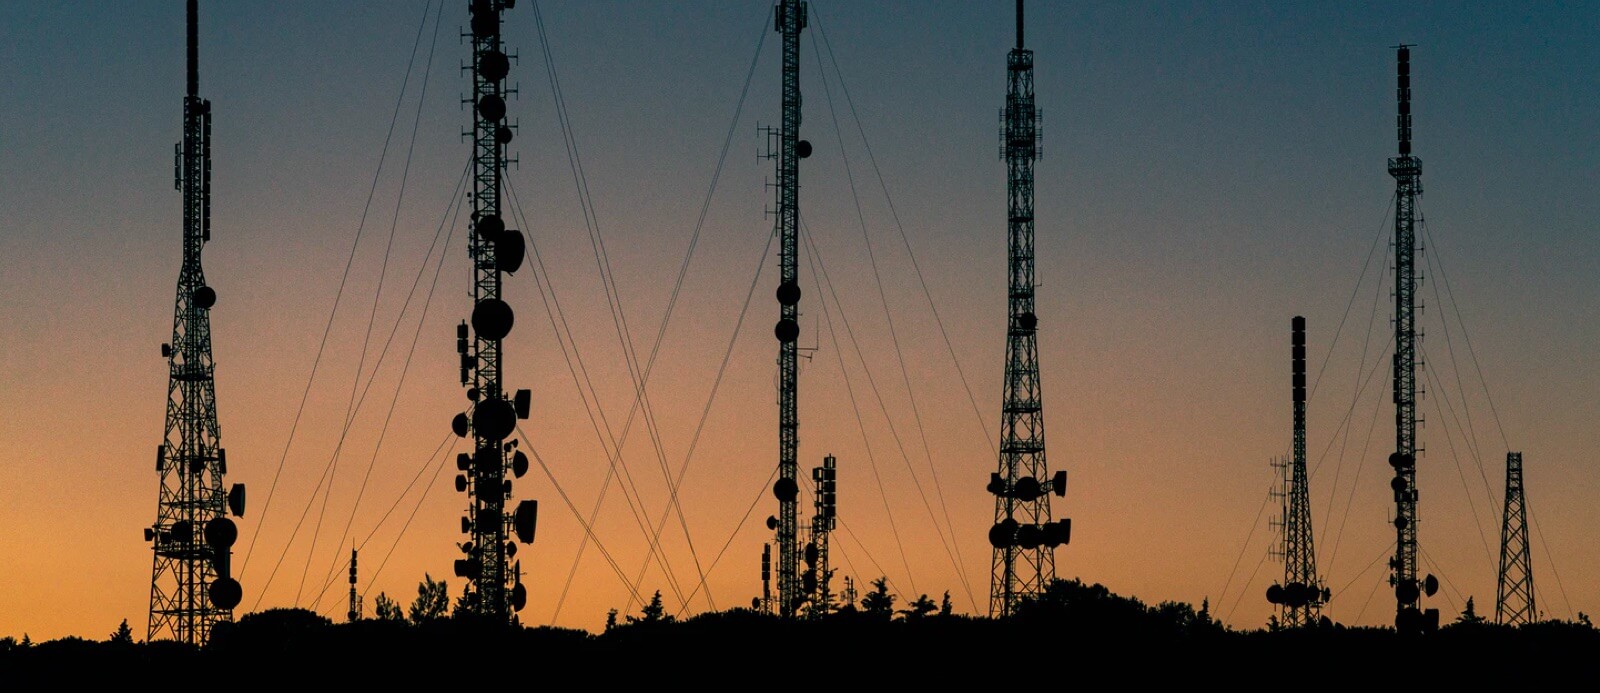 Babel Telecomunicaciones Otros. Panorámica de varias torretas de comunicaciones